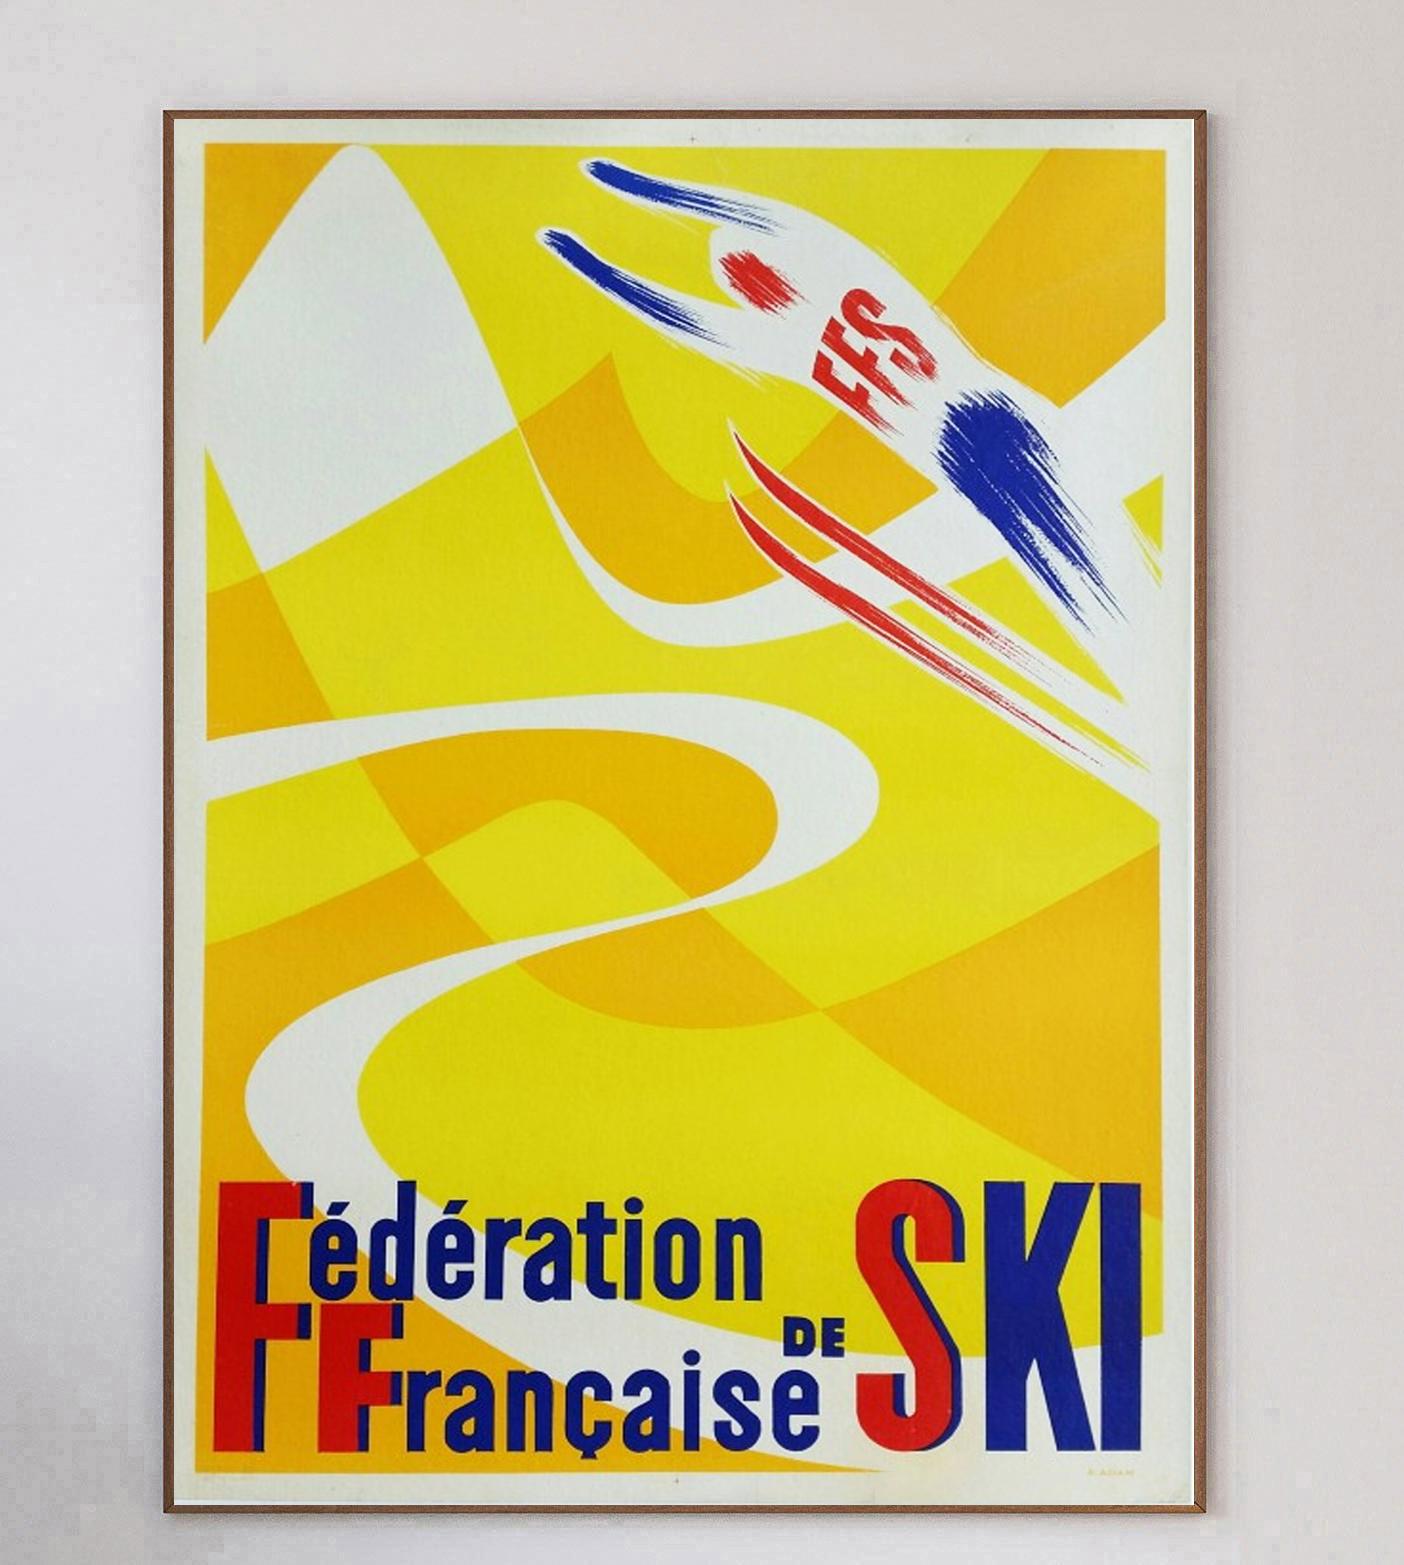 Wunderschönes Plakat, entworfen von Adam R. für die Federation Francaise de Ski. Dieses farbenfrohe Plakat aus dem Jahr 1950 zeigt einen Skifahrer, der hoch springt. Die FFS wurde 1924 gegründet und besteht bis heute.

Dieses seltene lithografische